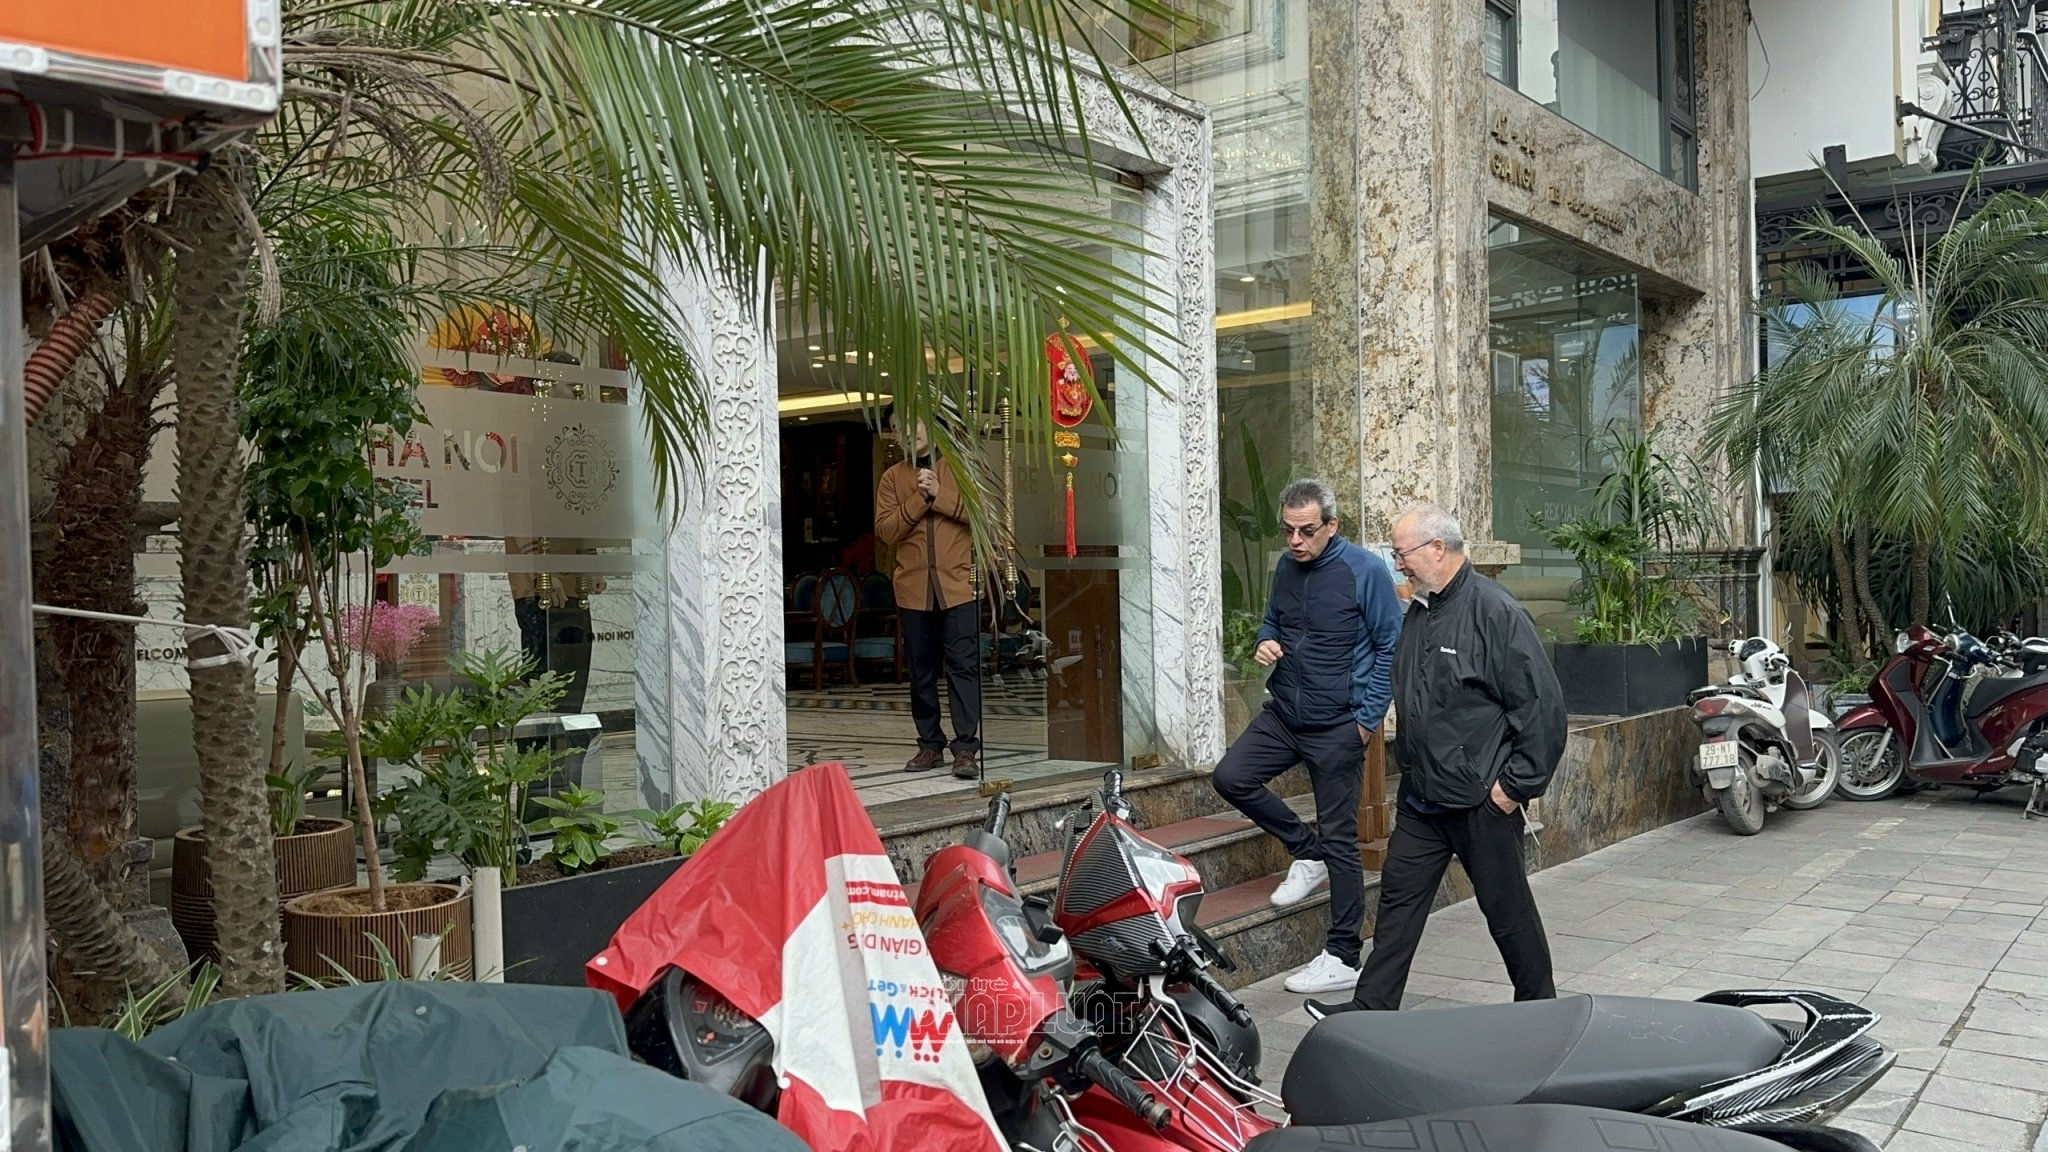 Rex Hà Nội Hotel nườm nượp đón khách bất chấp bị đình chỉ hoạt động